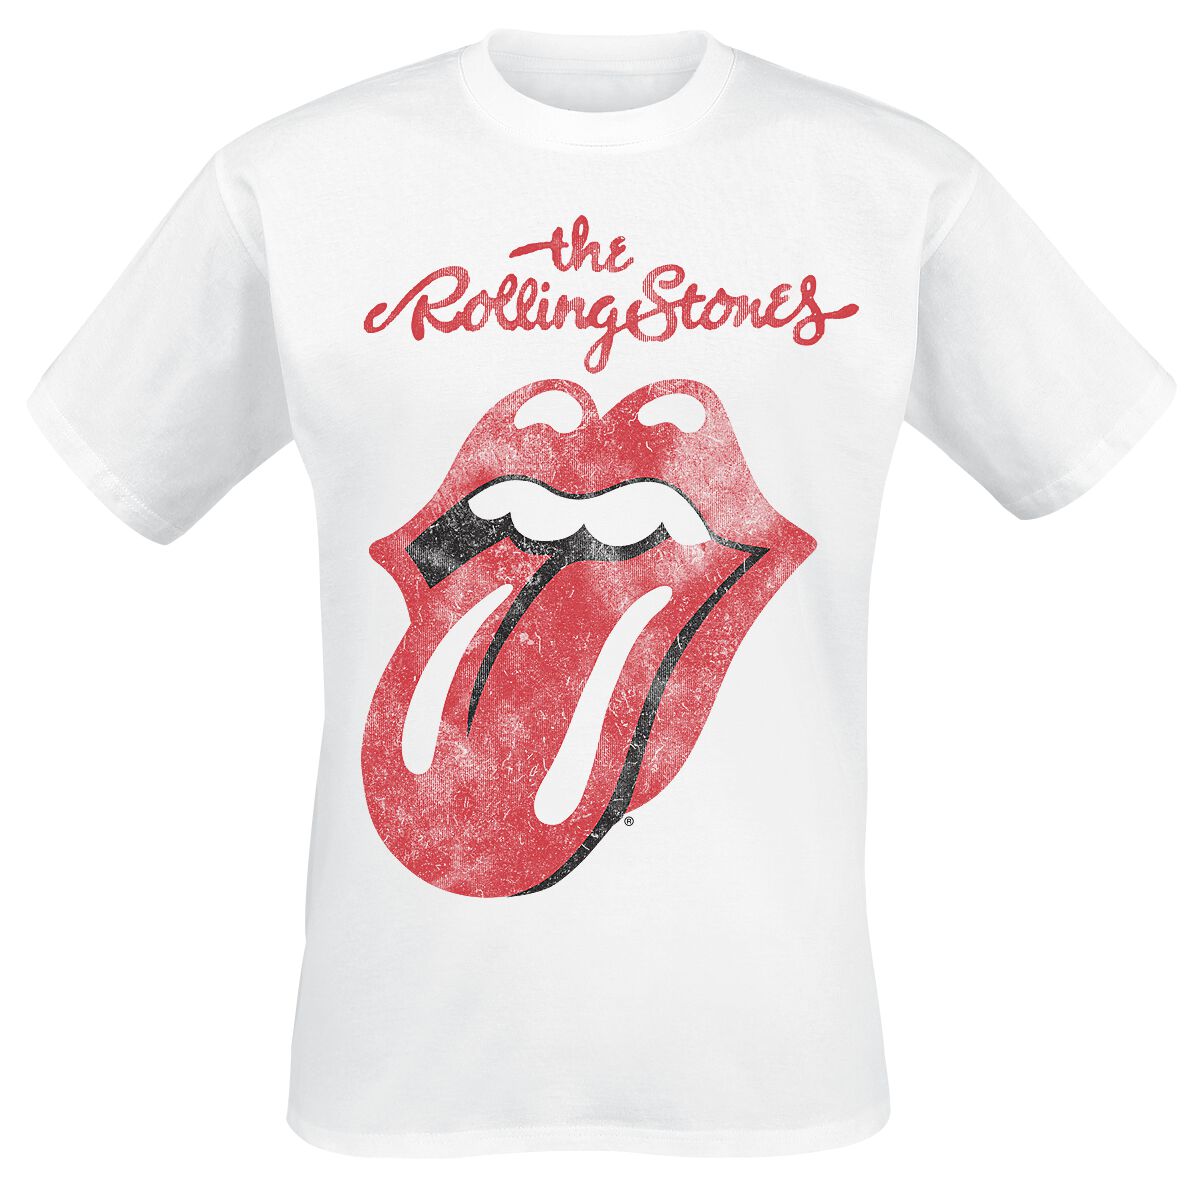 The Rolling Stones T-Shirt - Classic Tongue - S bis XXL - für Männer - Größe XL - weiß  - Lizenziertes Merchandise!